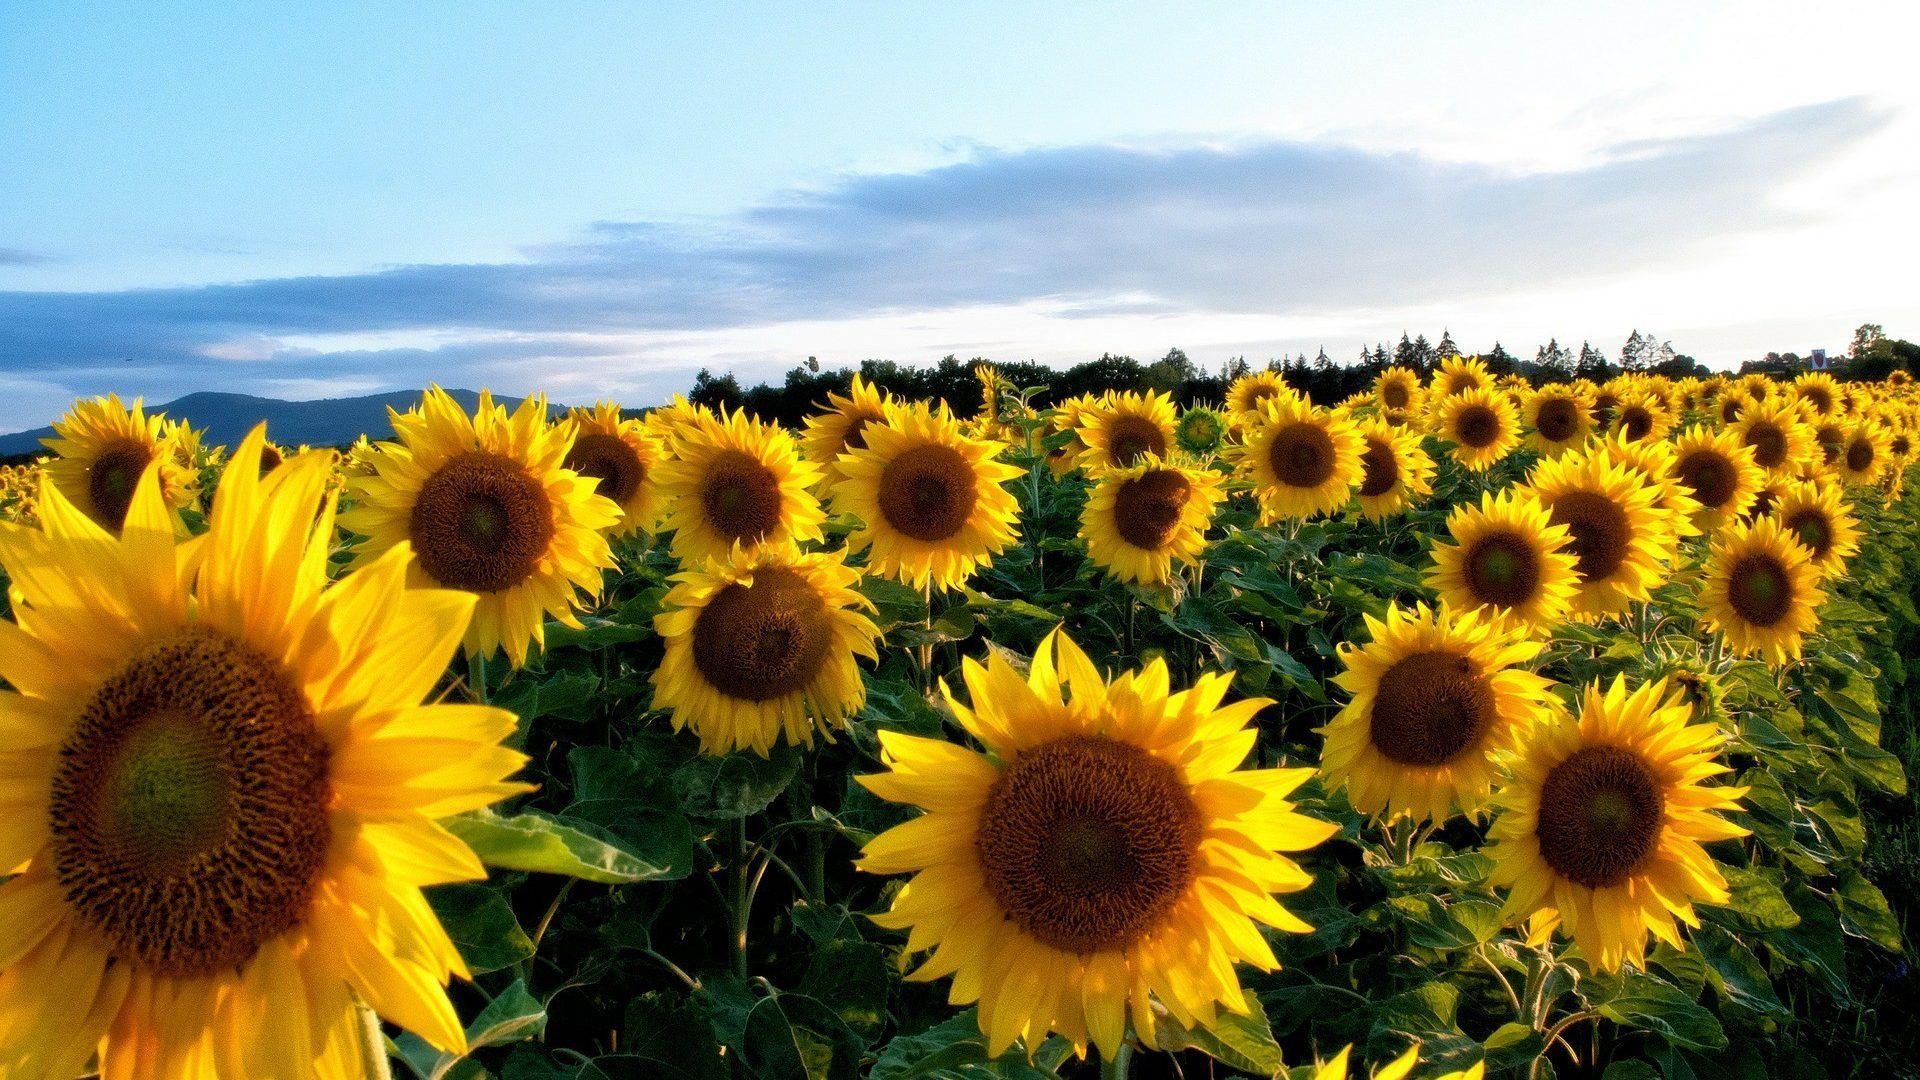 Sunflower Desktop Wallpapers - Top Free Sunflower Desktop ...